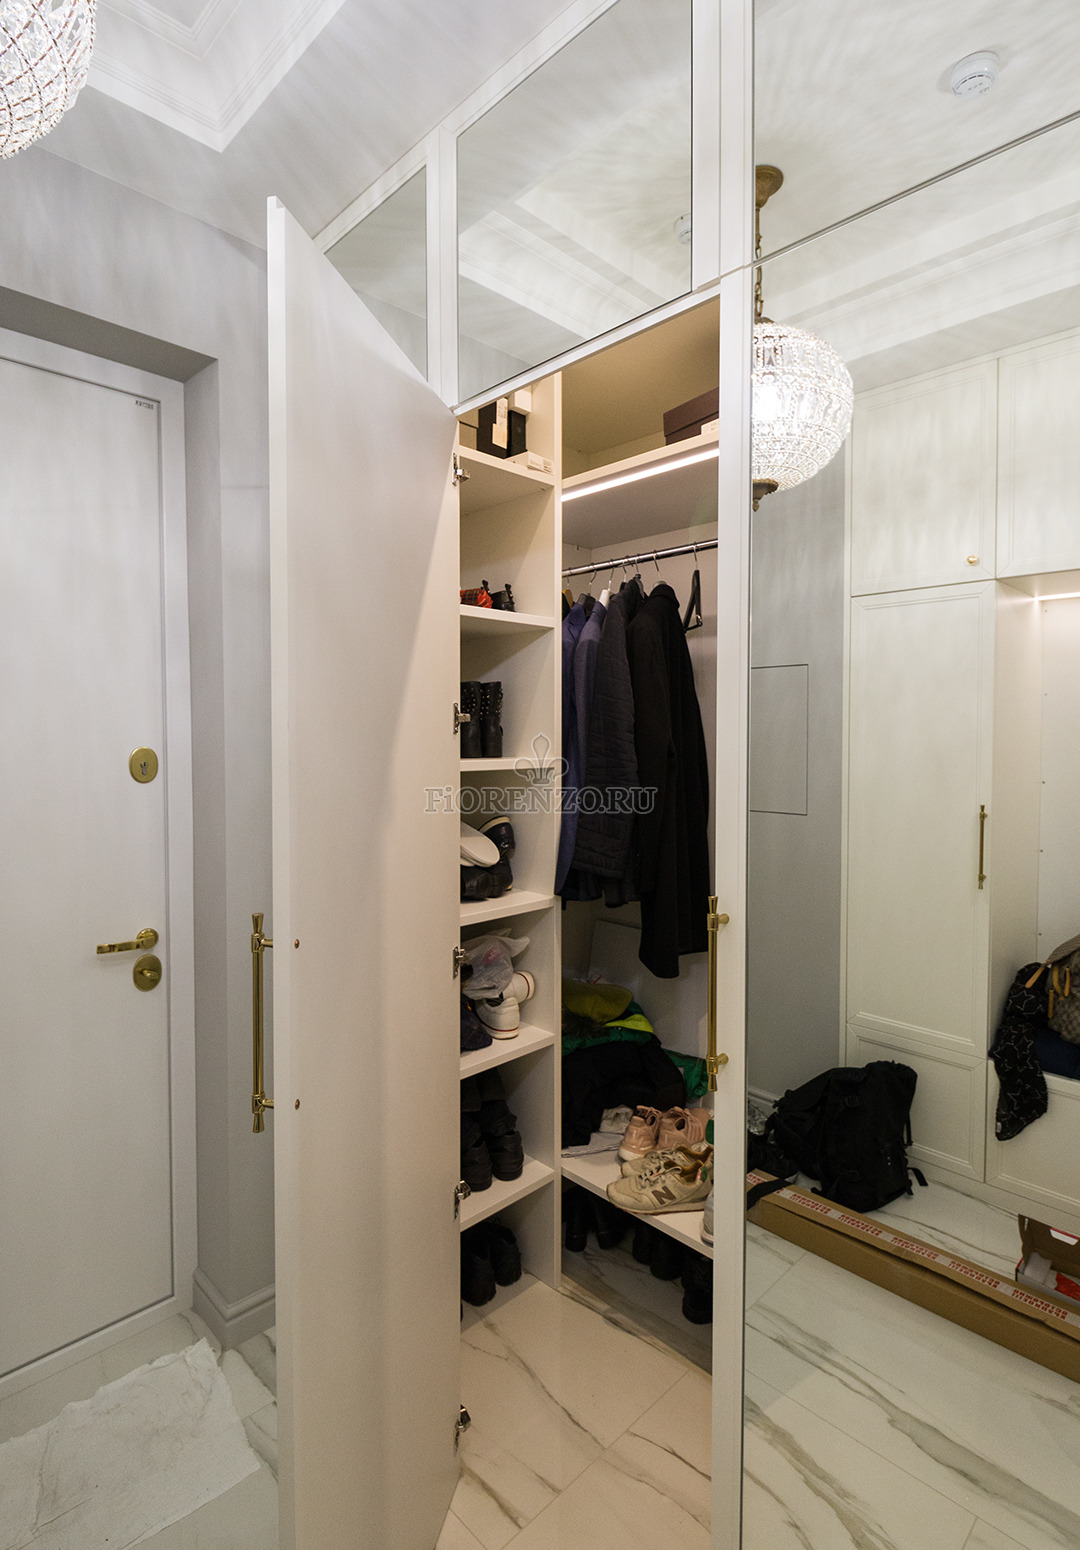 Тип гардеробной зависит от особенностей коридора